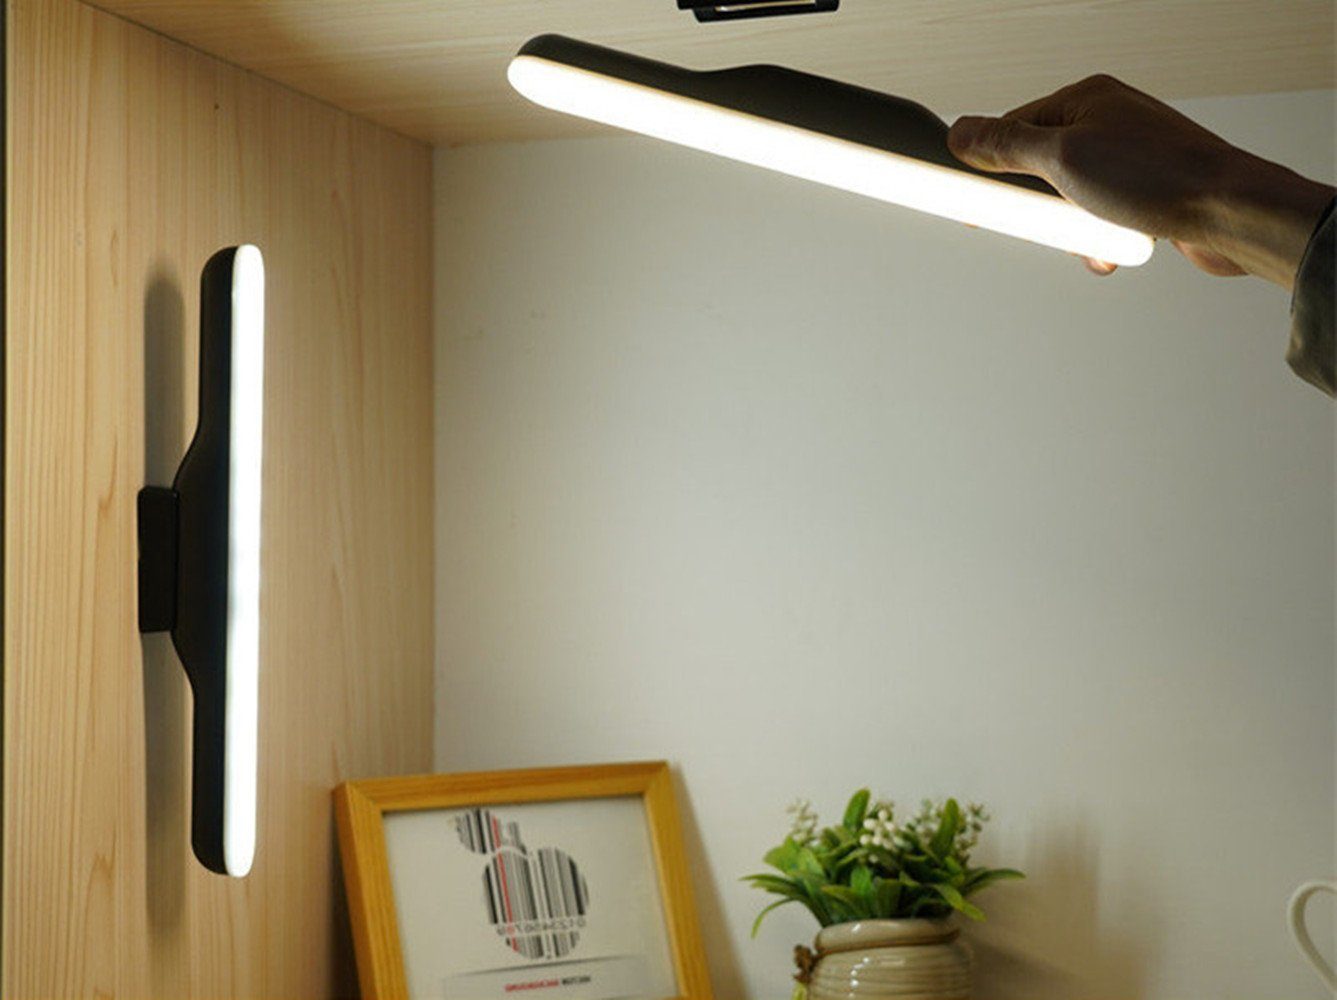 Einstellen Touch Tischlampe Unterbaulampe, Unterbauleuchte mit Magnet,LED Hängende Schreibtischlampe XDOVET LED, Beleuchtung Tischlampe LED Tischleuchte